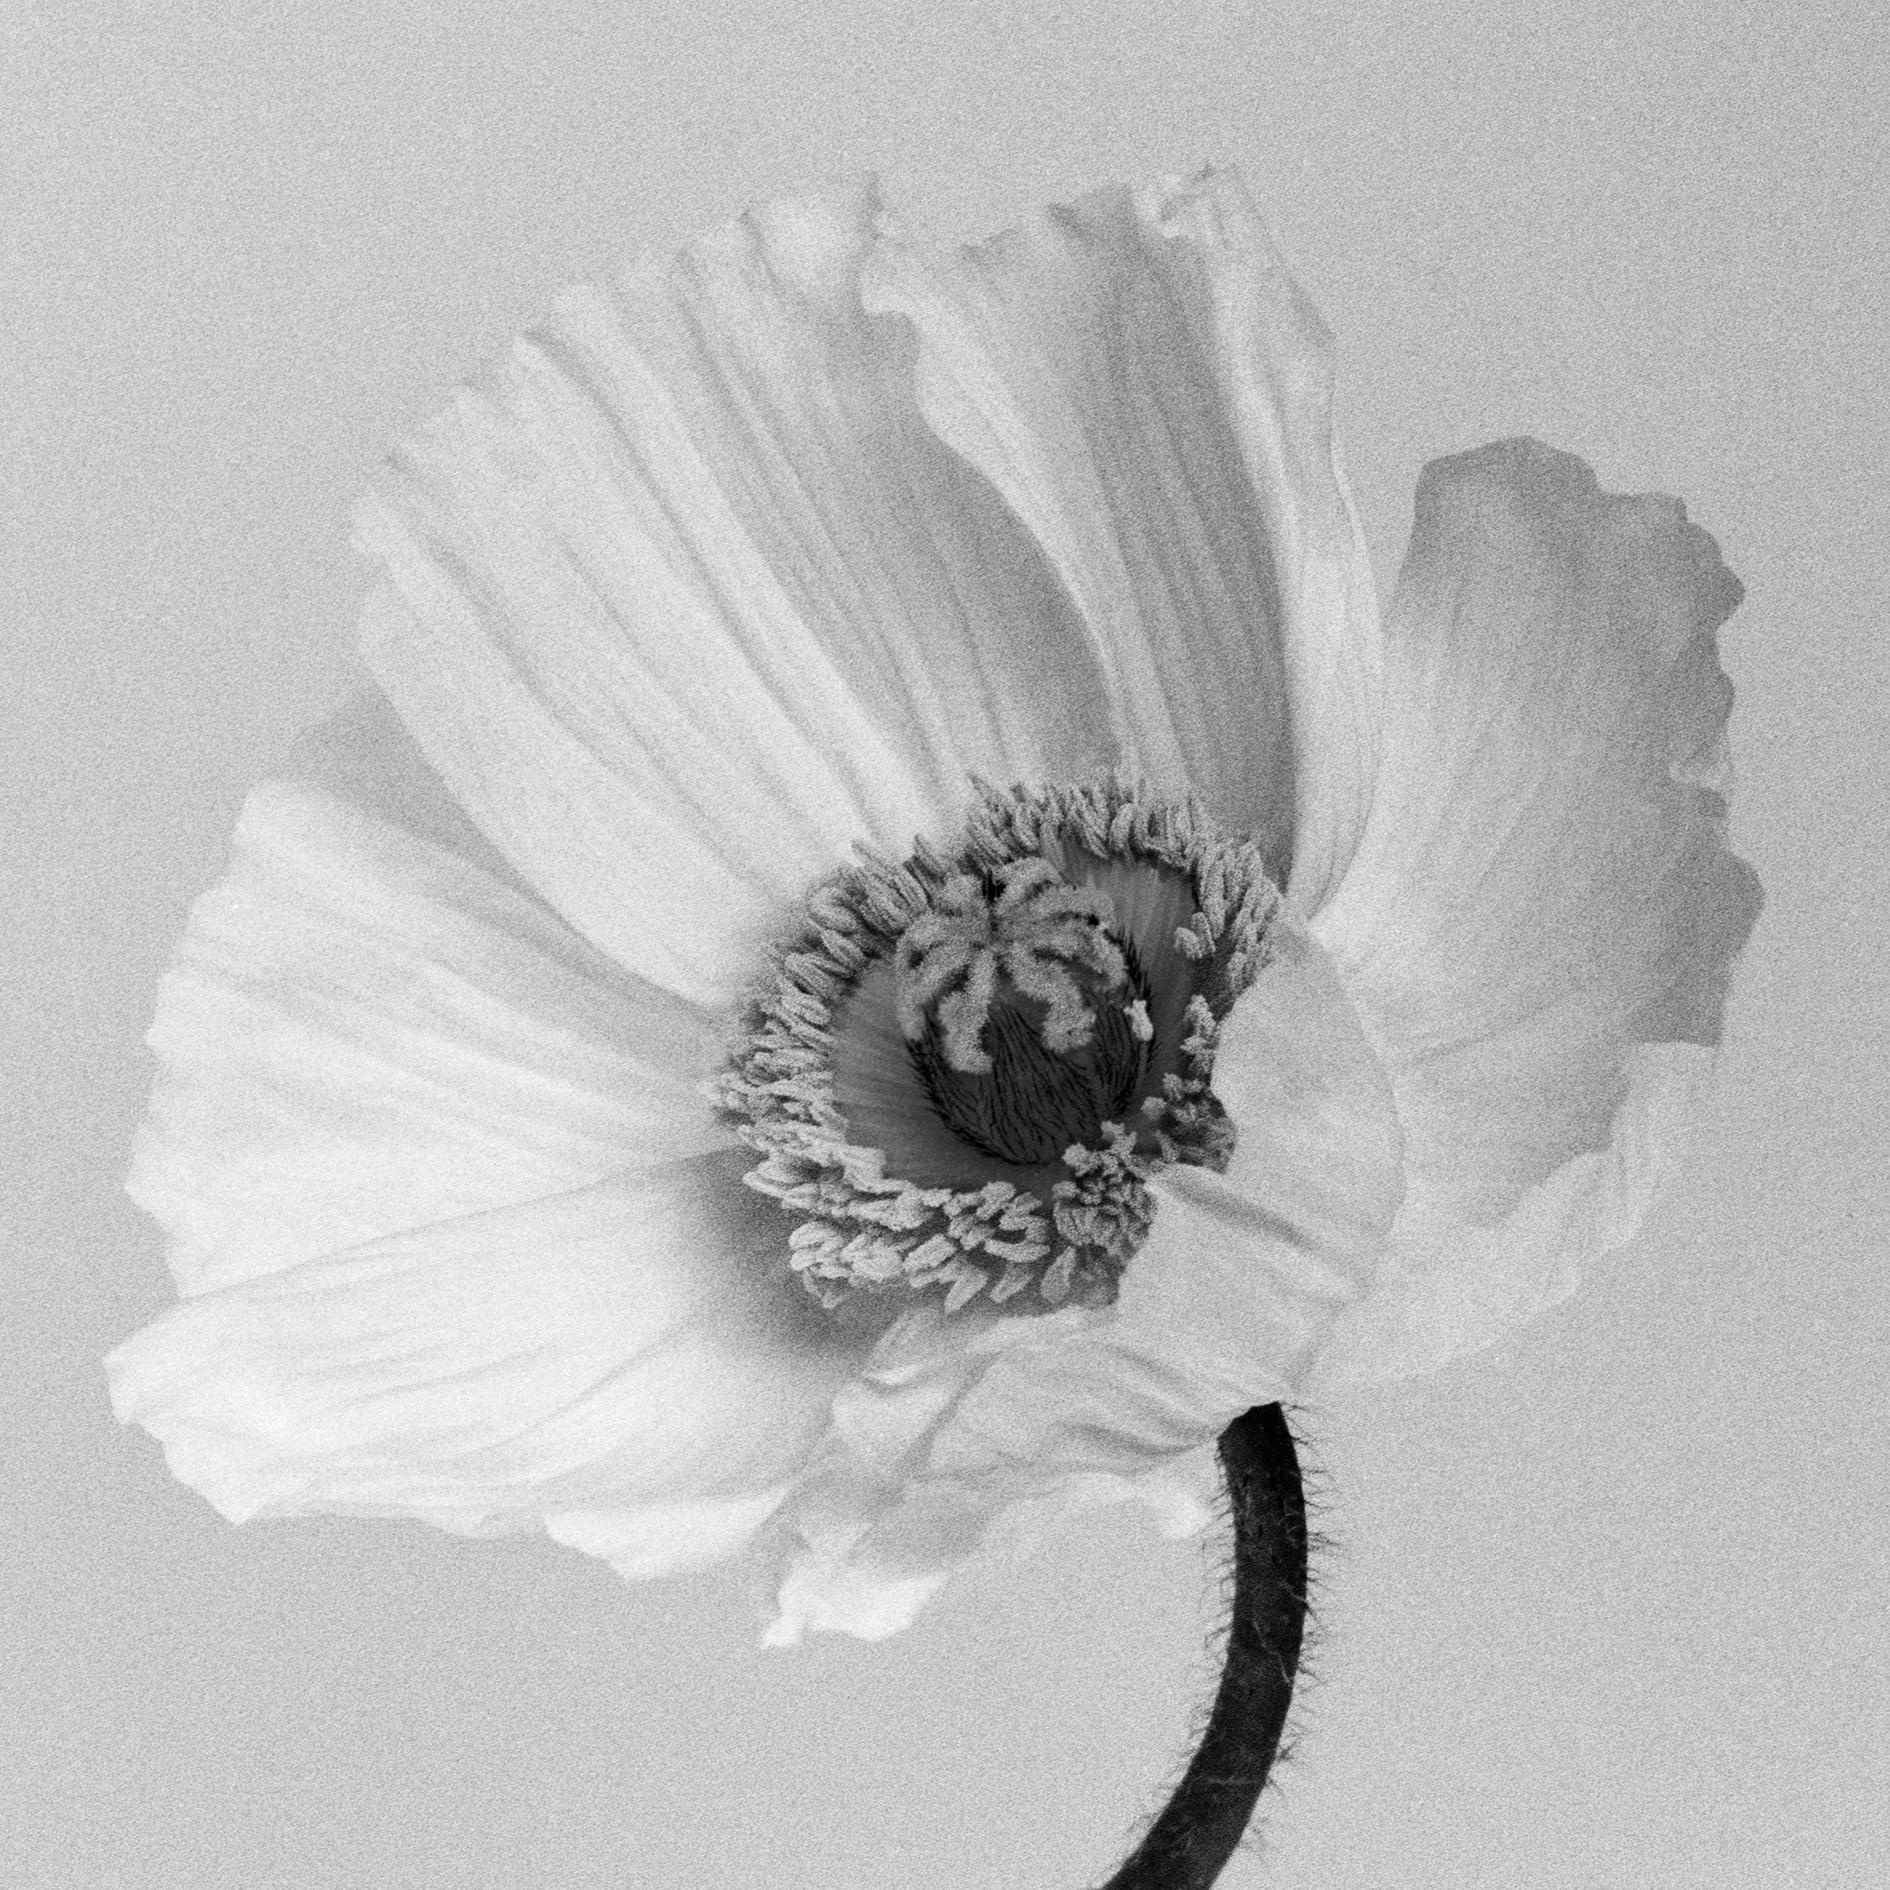 Mohnblumen Nr.2 – Analogue Schwarz-Weiß-Blumenfotografie, Auflage von 20 Stück